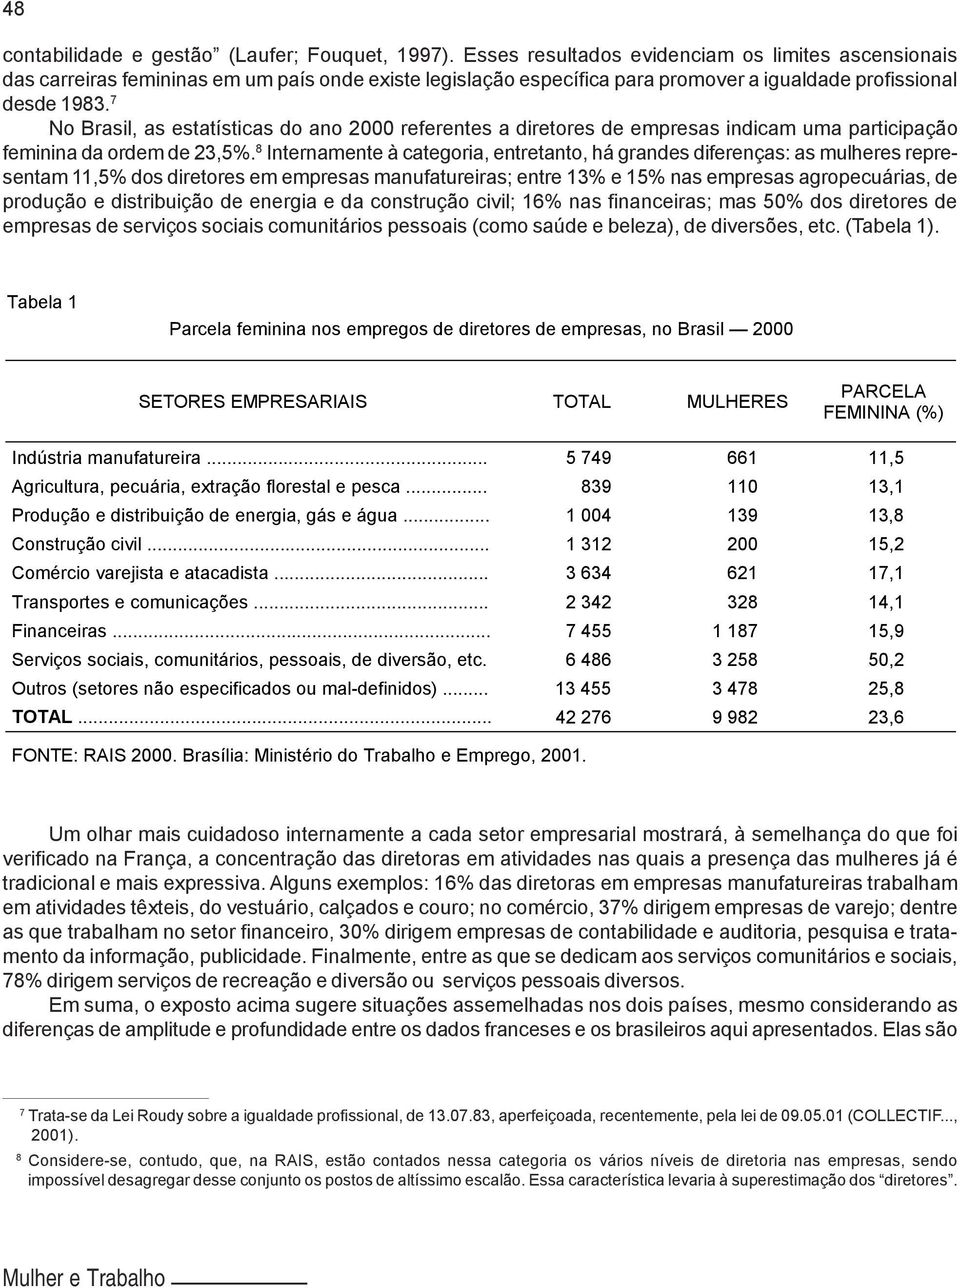 7 No Brasil, as estatísticas do ano 2000 referentes a diretores de empresas indicam uma participação feminina da ordem de 23,5%.